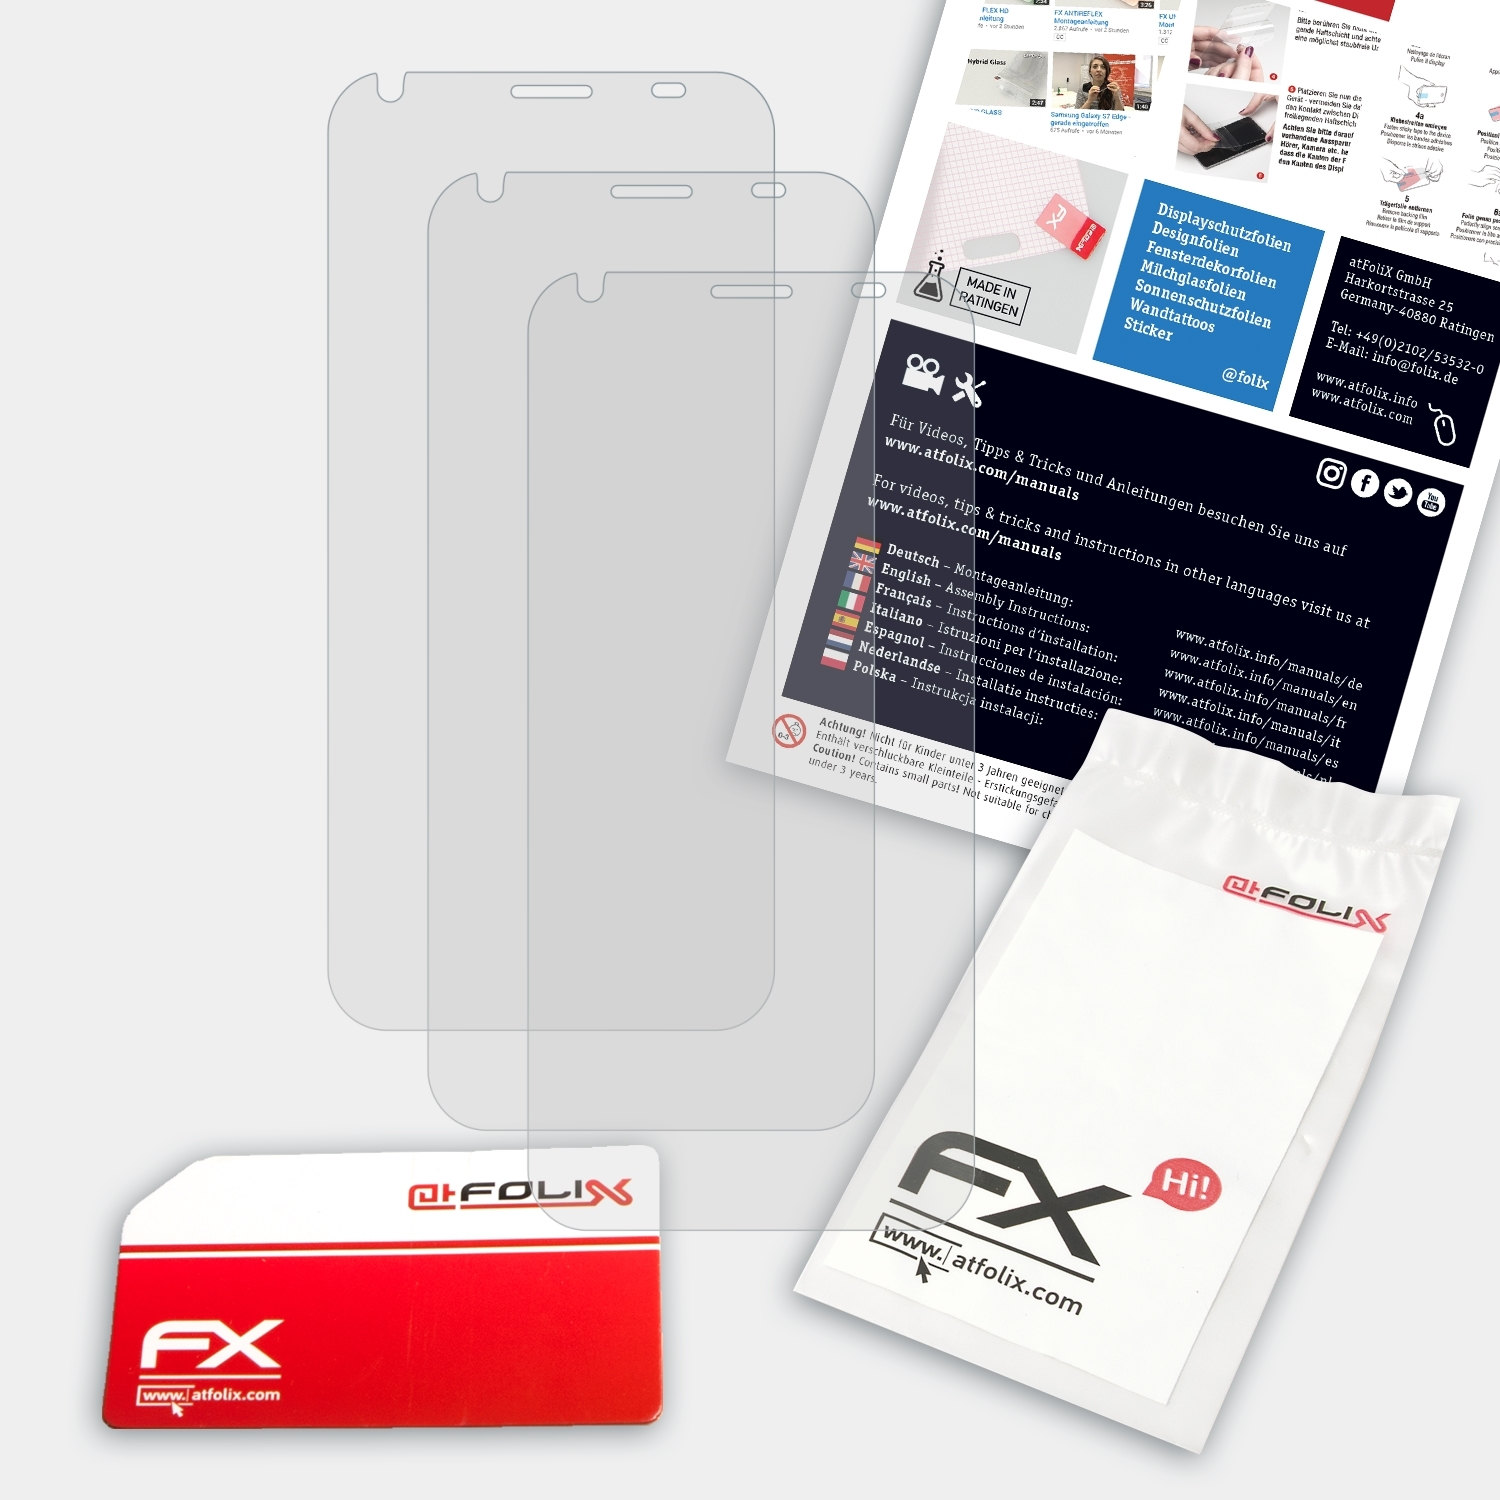 Liquid Acer Z6) ATFOLIX 3x Displayschutz(für FX-Antireflex